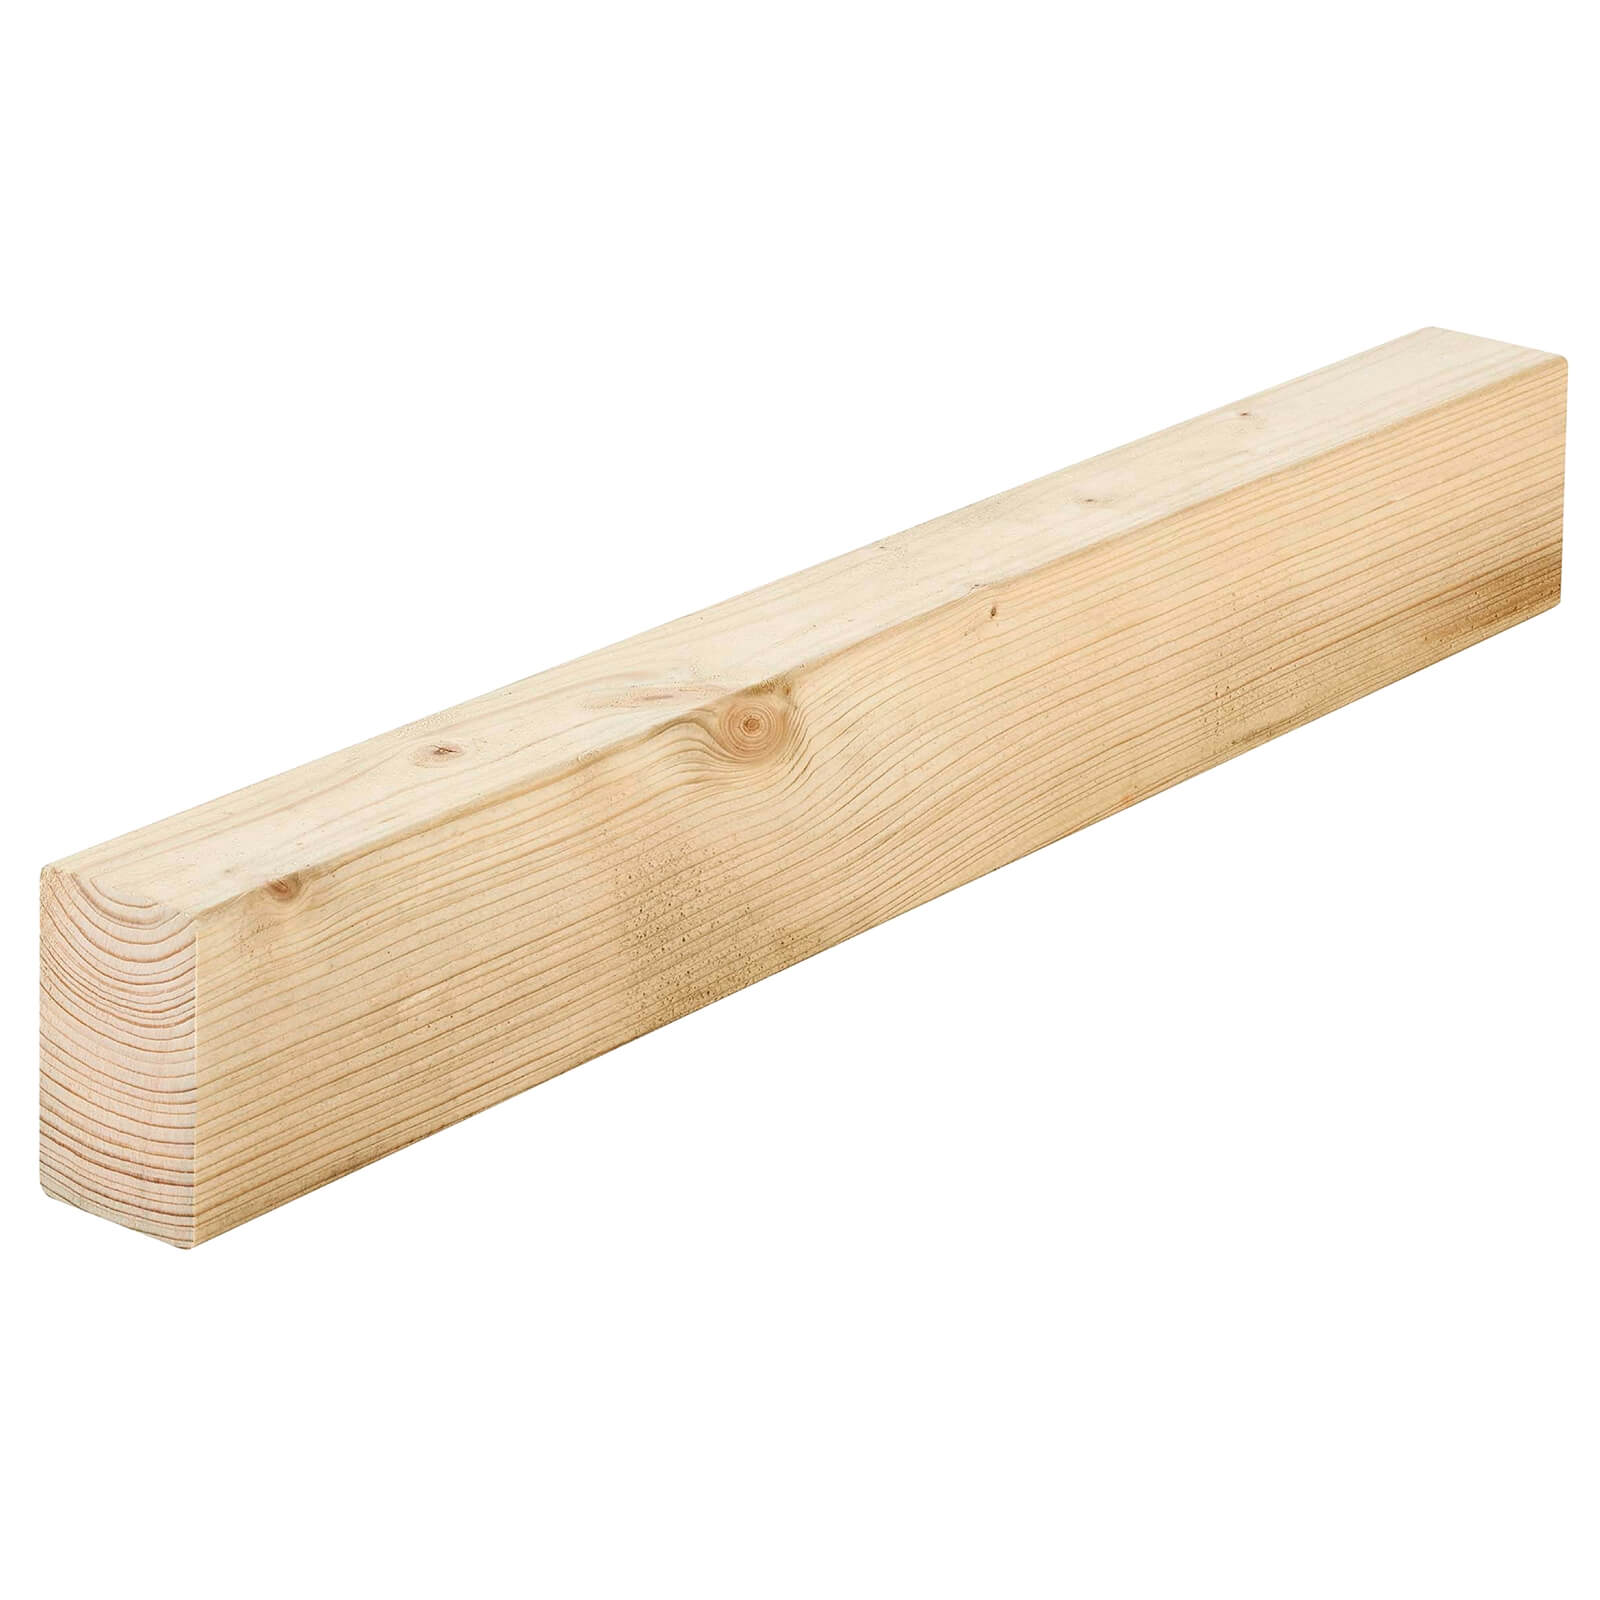 Metsa C16 Grade Internal Structure Carcassing Timber 2.4m (45 x 70 x 2400mm)